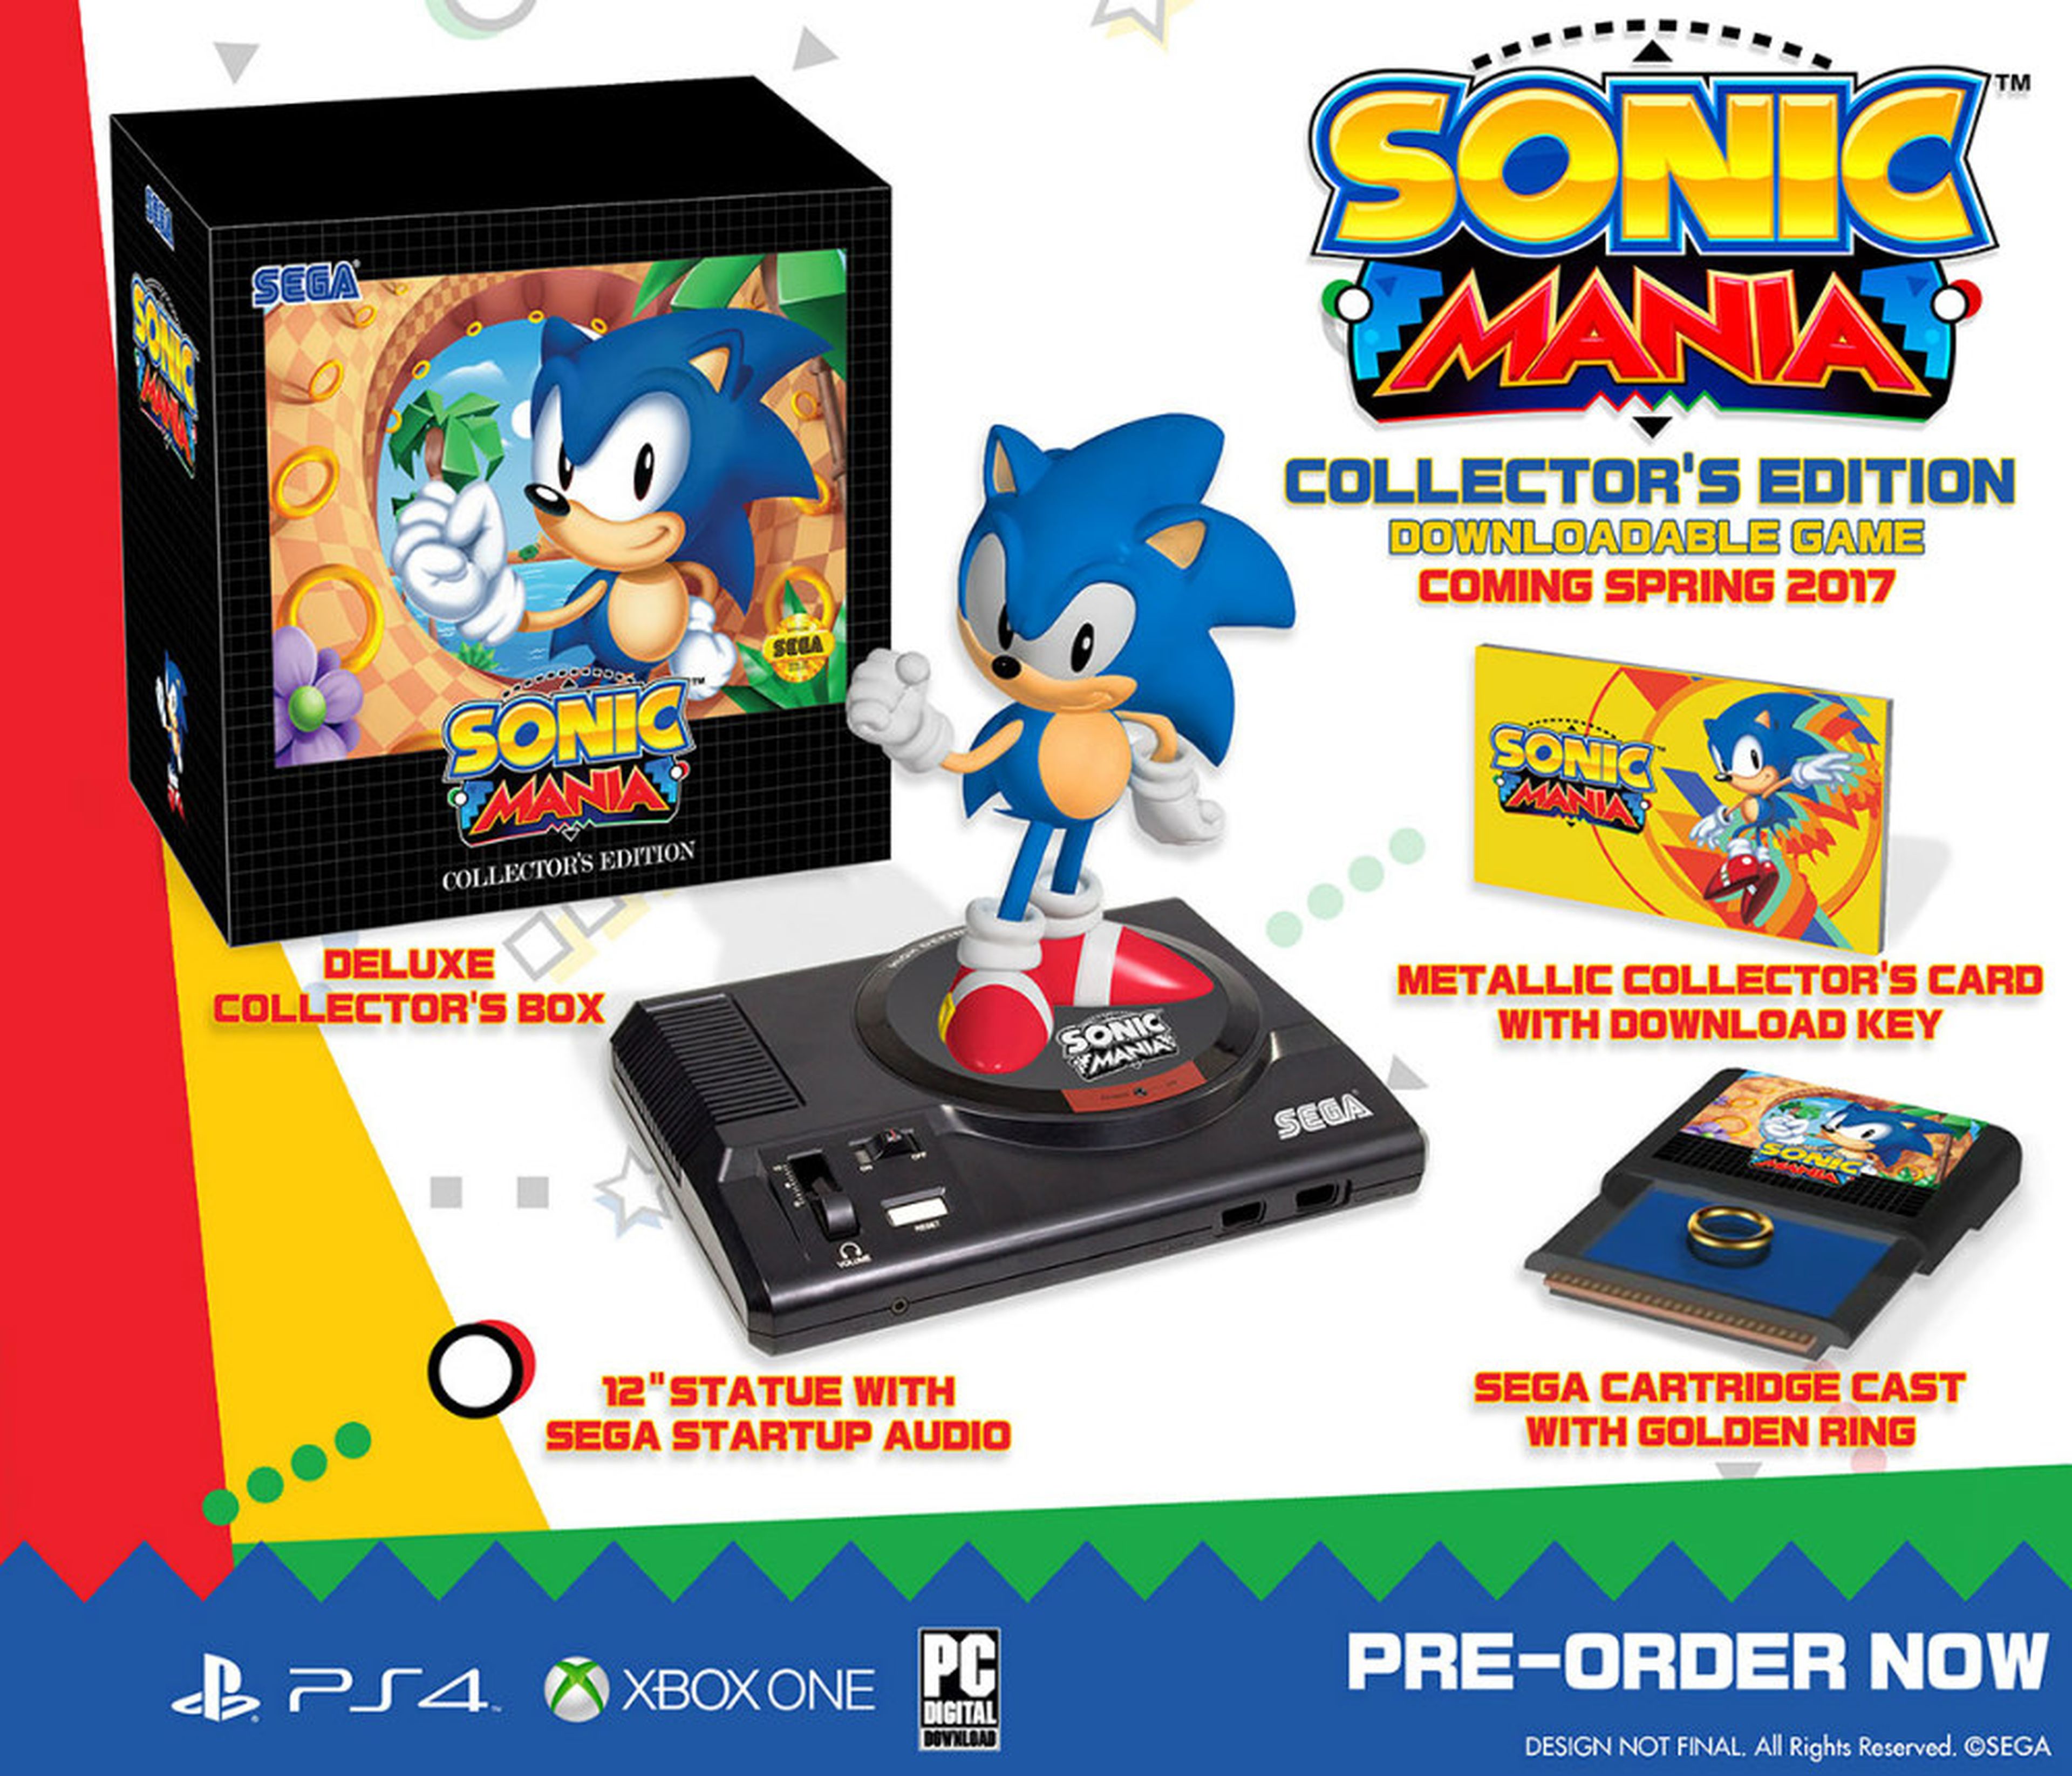 Espectacular Edición coleccionista de Sonic Mania para Norteamérica